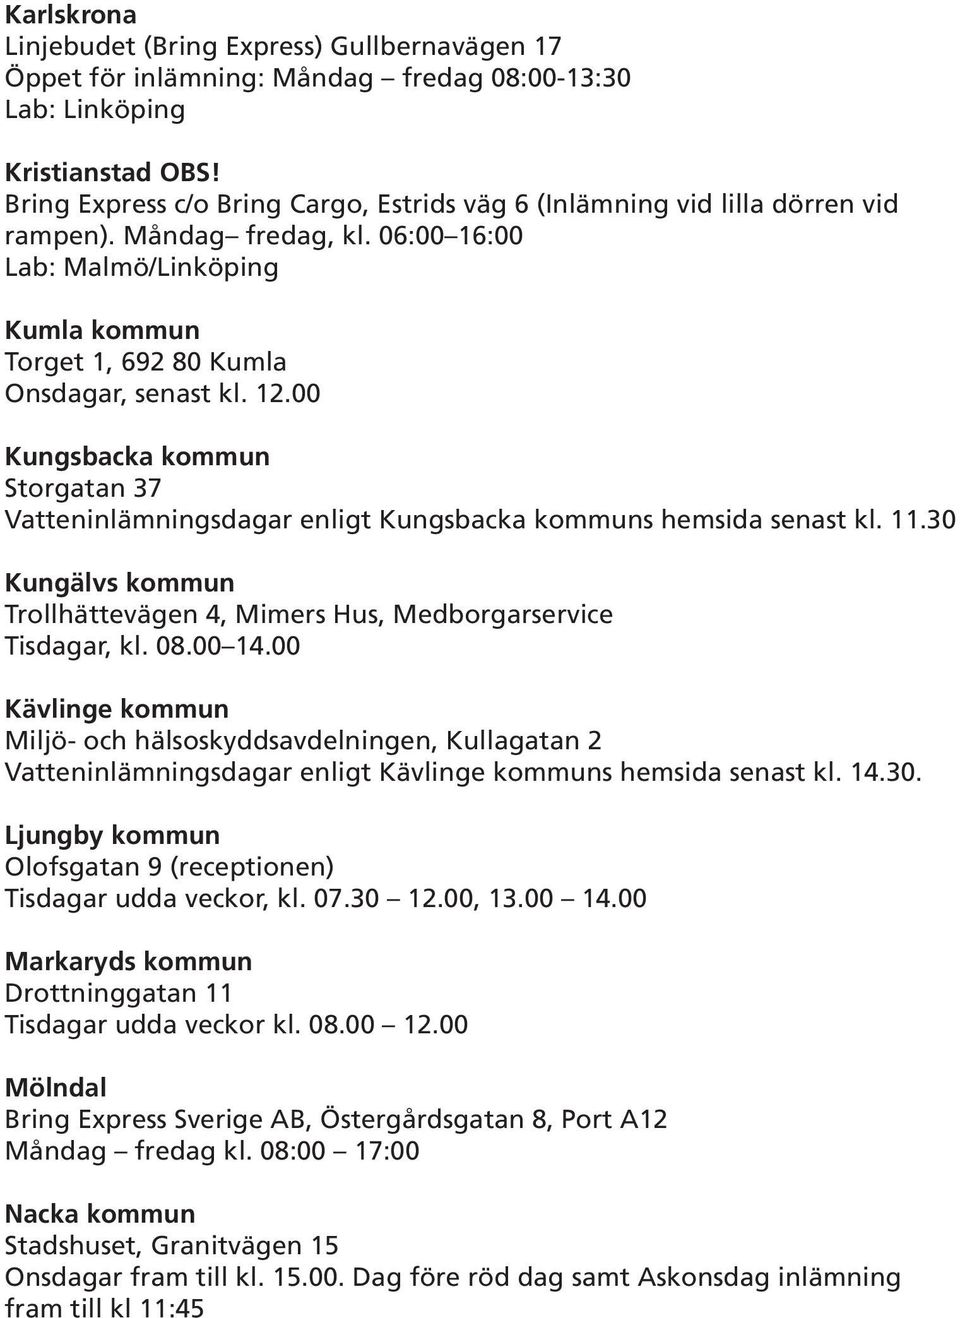 00 Kungsbacka kommun Storgatan 37 Vatteninlämningsdagar enligt Kungsbacka kommuns hemsida senast kl. 11.30 Kungälvs kommun Trollhättevägen 4, Mimers Hus, Medborgarservice Tisdagar, kl. 08.00 14.